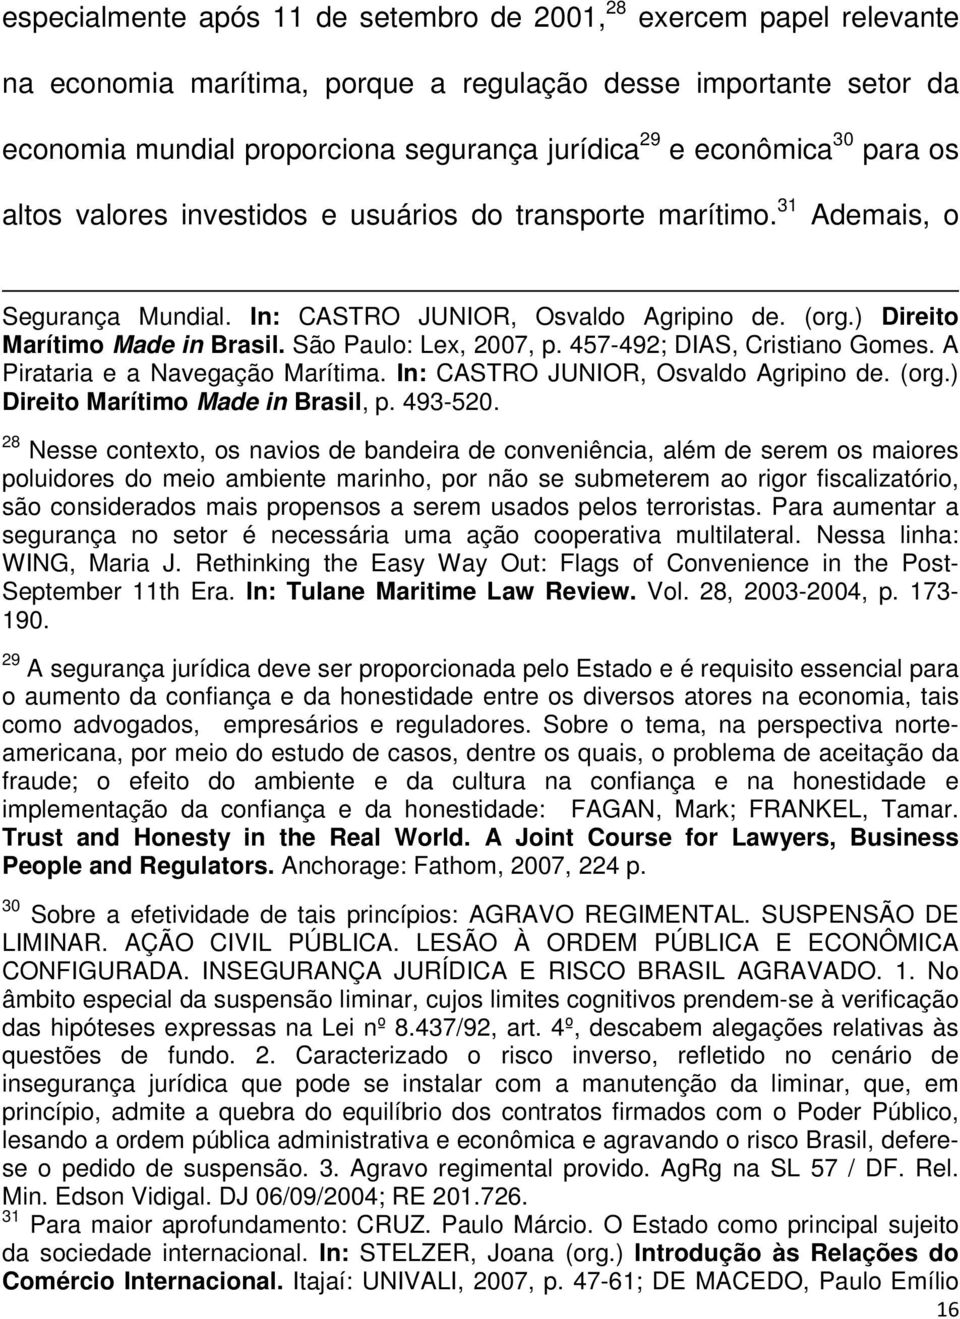 São Paulo: Lex, 2007, p. 457-492; DIAS, Cristiano Gomes. A Pirataria e a Navegação Marítima. In: CASTRO JUNIOR, Osvaldo Agripino de. (org.) Direito Marítimo Made in Brasil, p. 493-520.